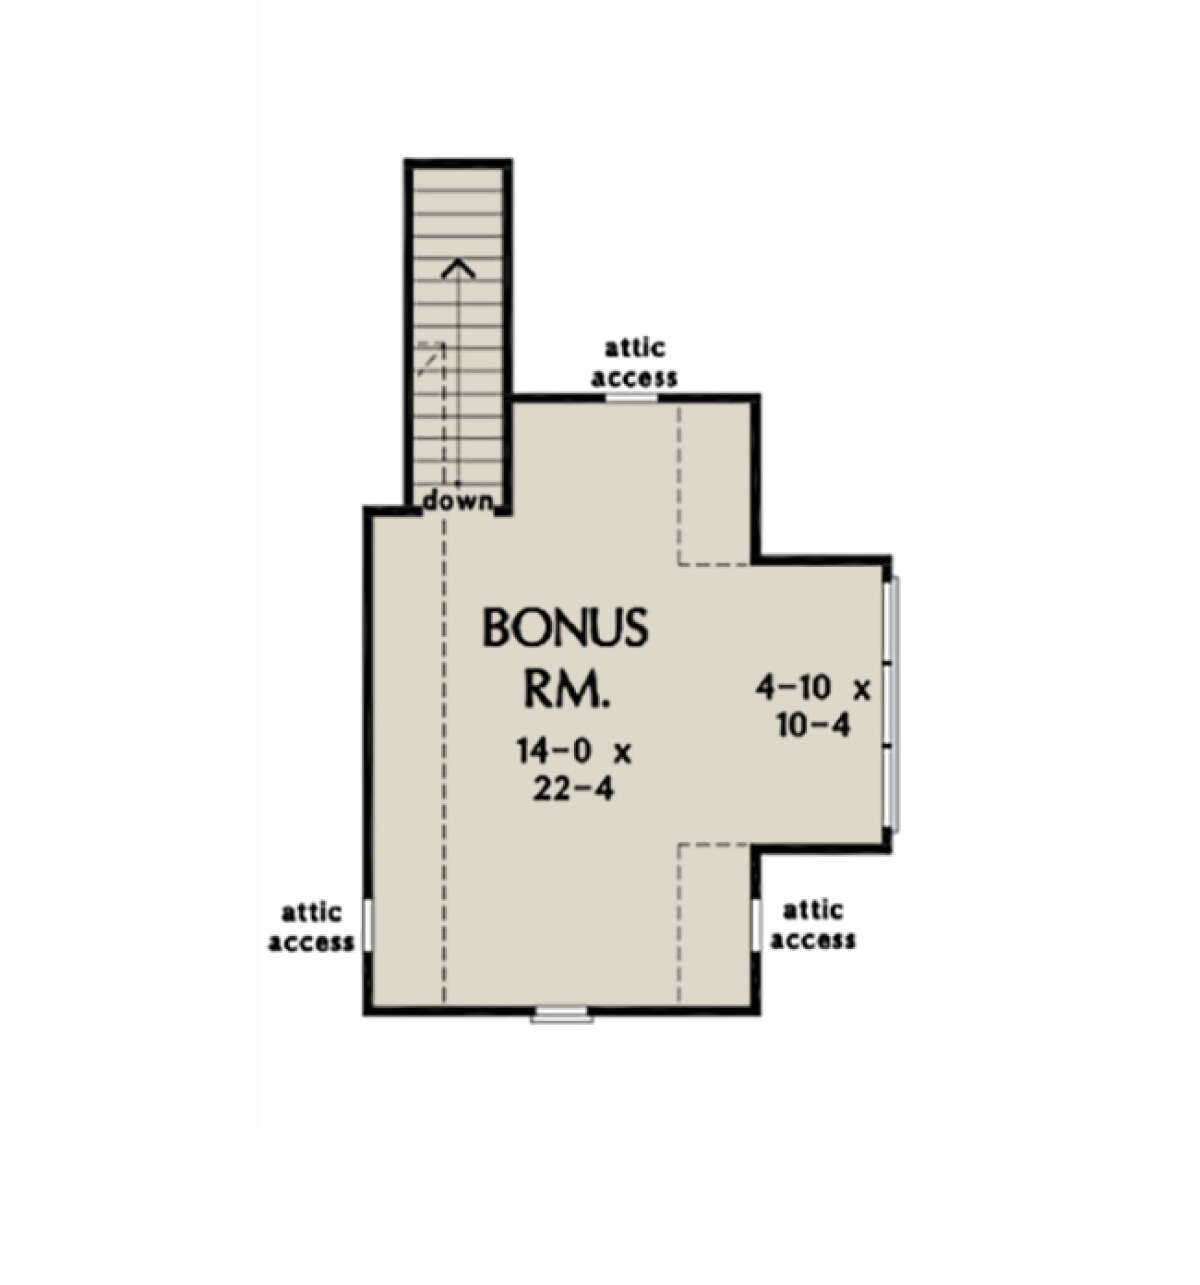 Bonus Room for House Plan #2865-00191